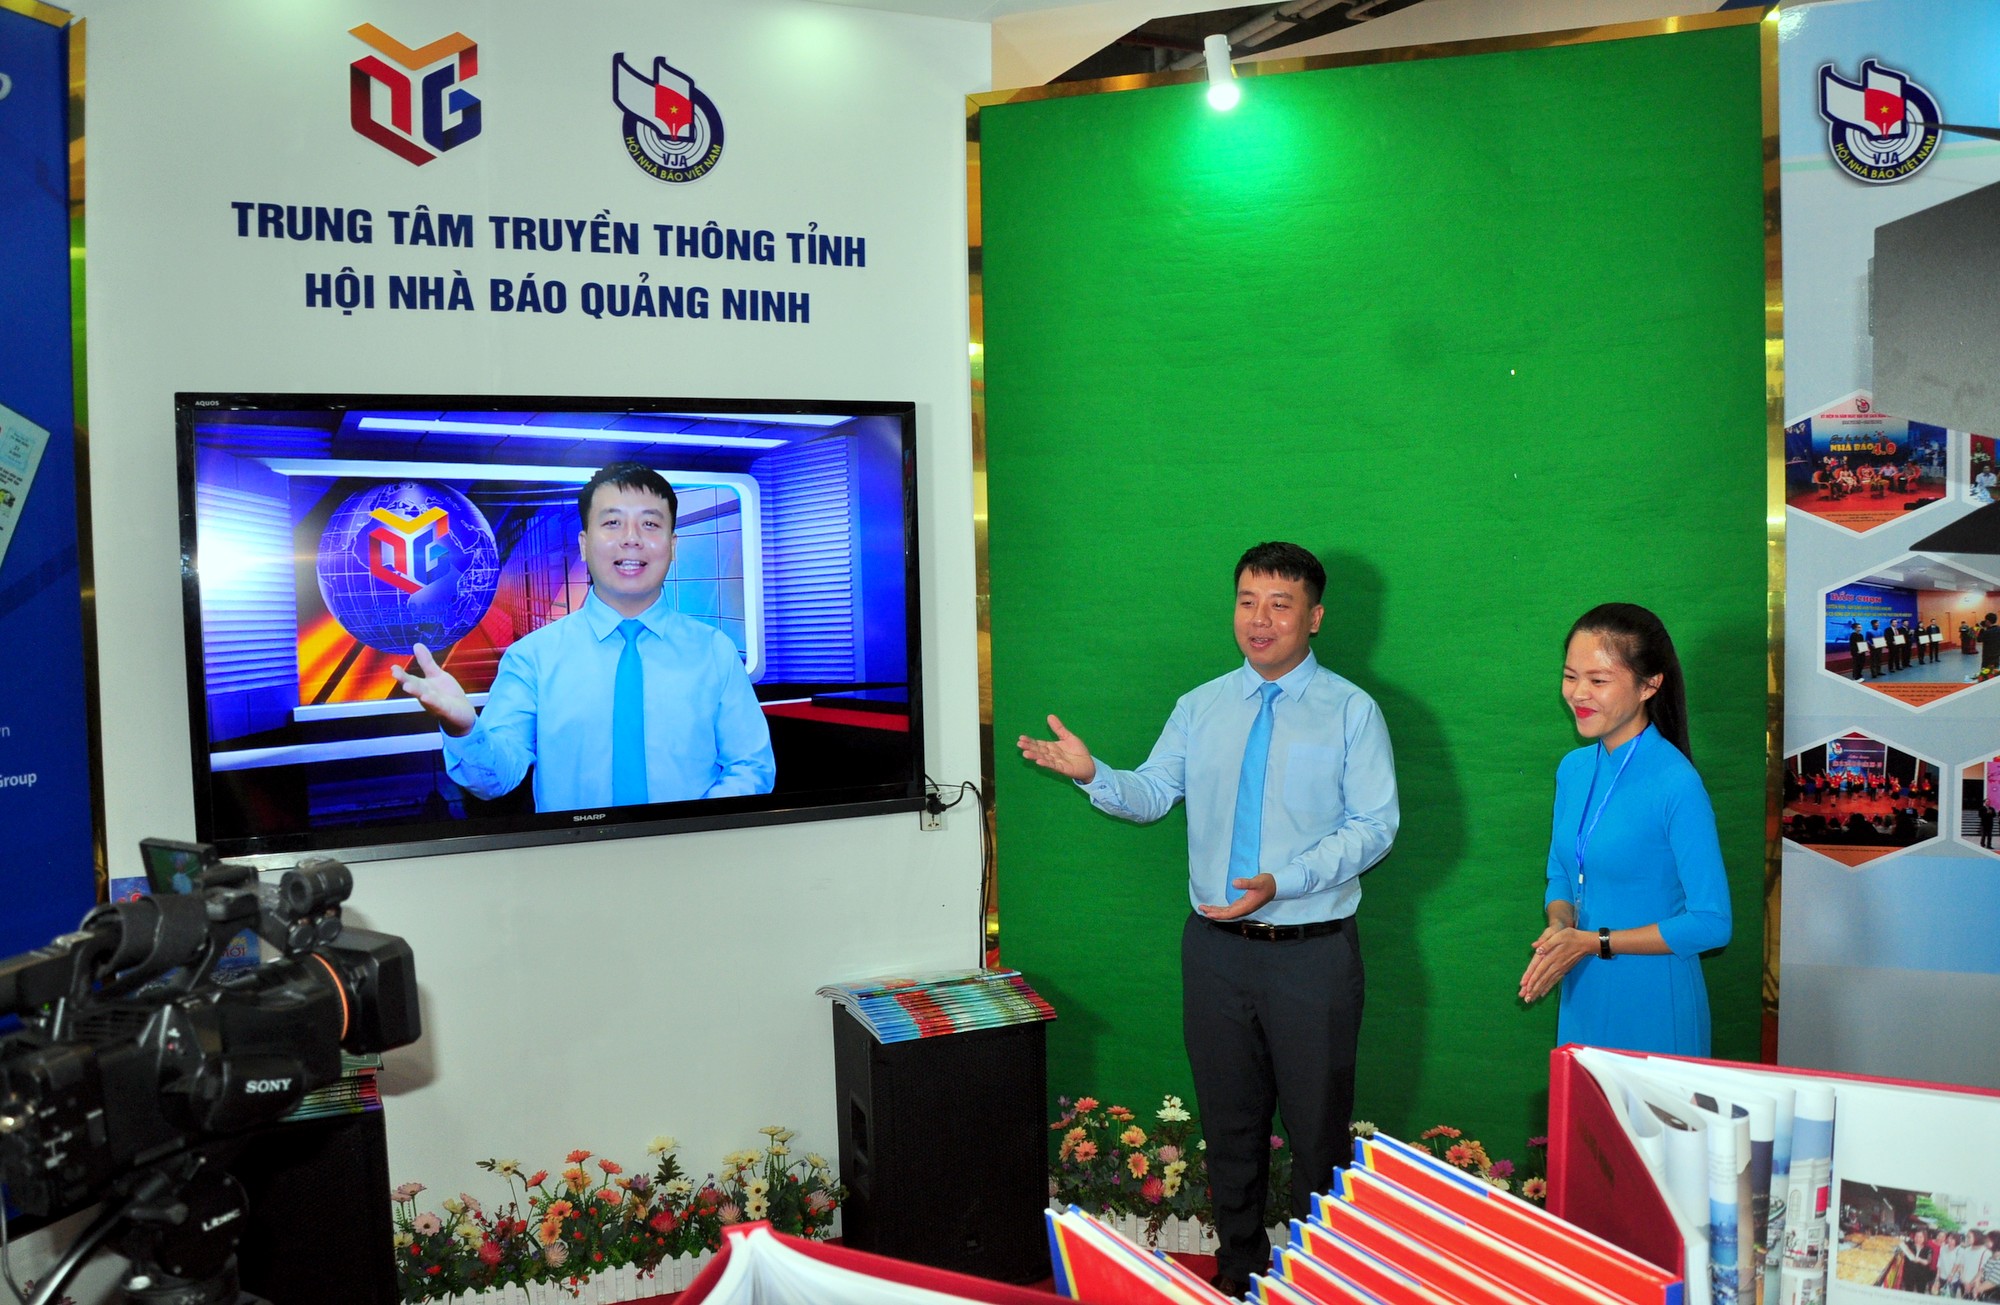 Gian trưng bày của Trung tâm Truyền thông và Hội Nhà báo tỉnh Quảng Ninh cho phép du khách trải nghiệm công nghệ trường quay ảo.